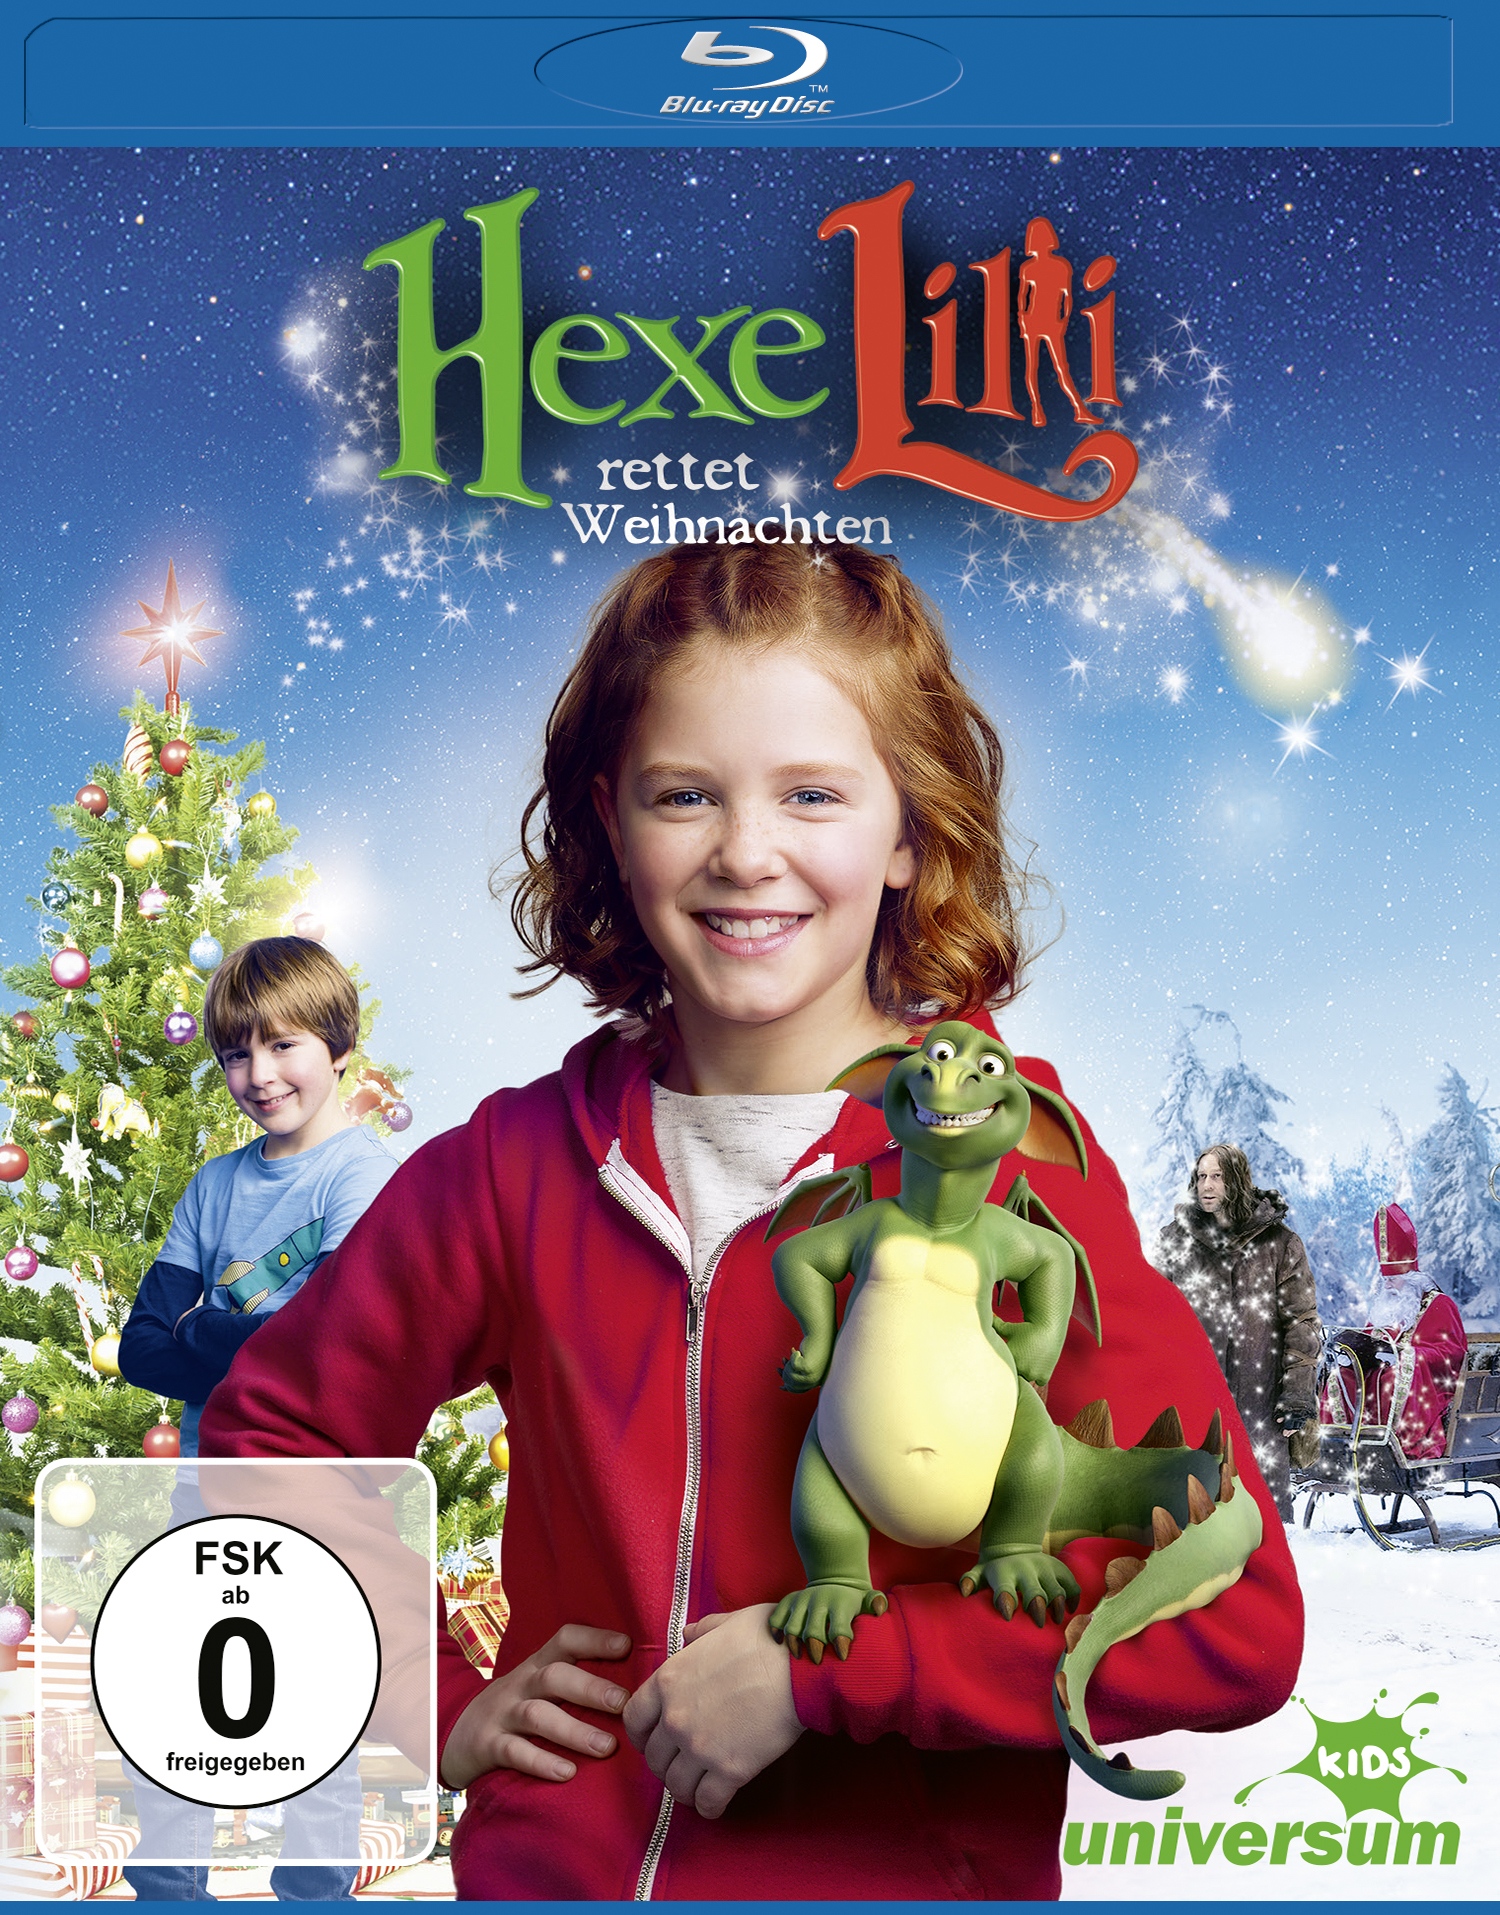 Hexe Lilli Blu-ray Weihnachten rettet